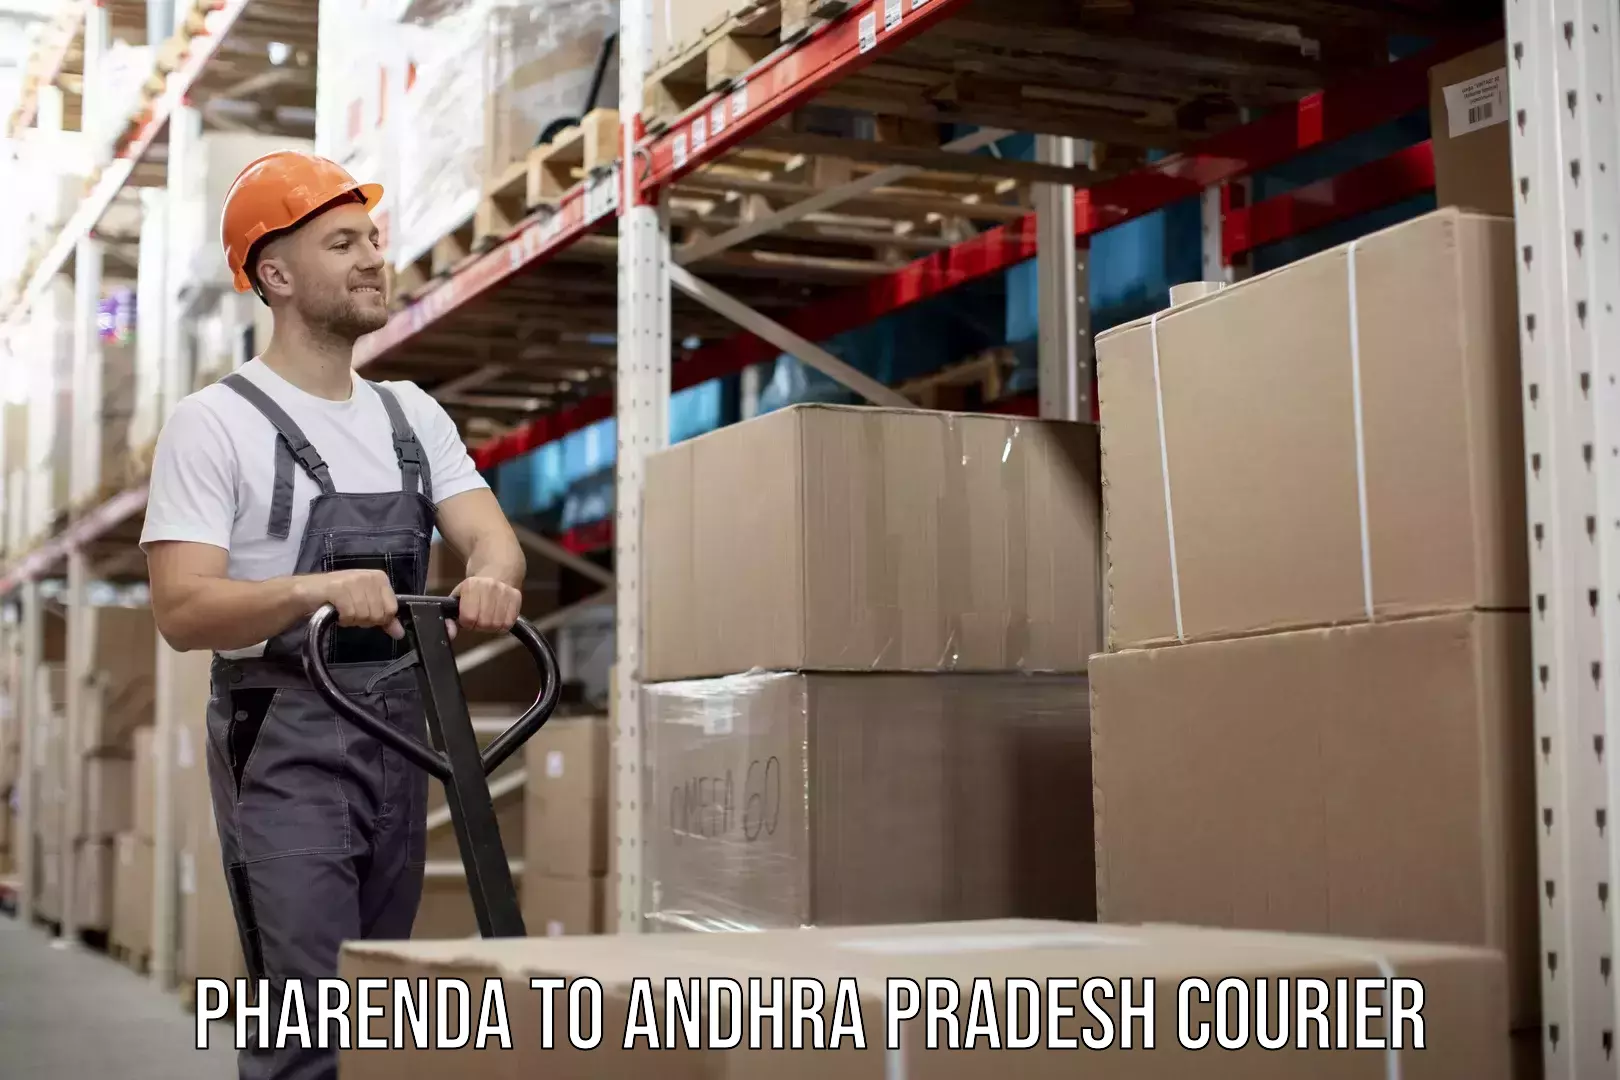 Efficient moving company Pharenda to Andhra Pradesh